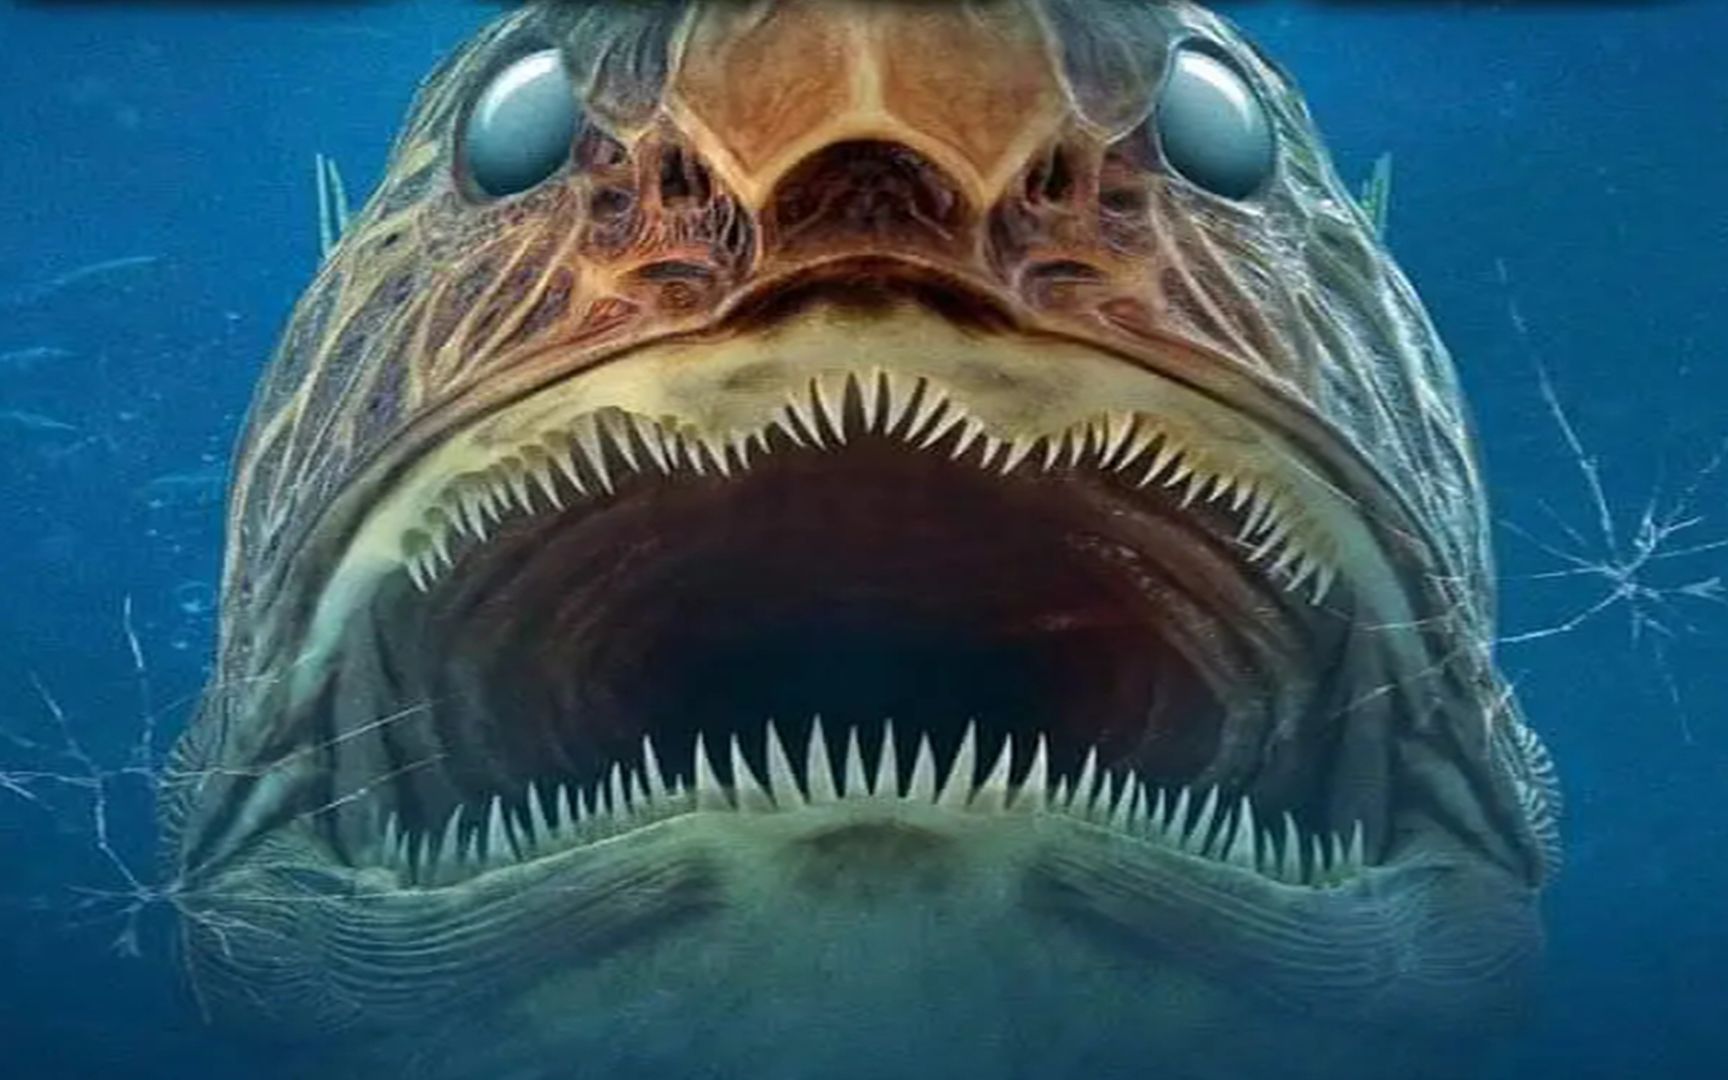 海洋生物感染丧尸病毒,水族馆内到处都是鲨鱼《亡者之湿》恐怖片